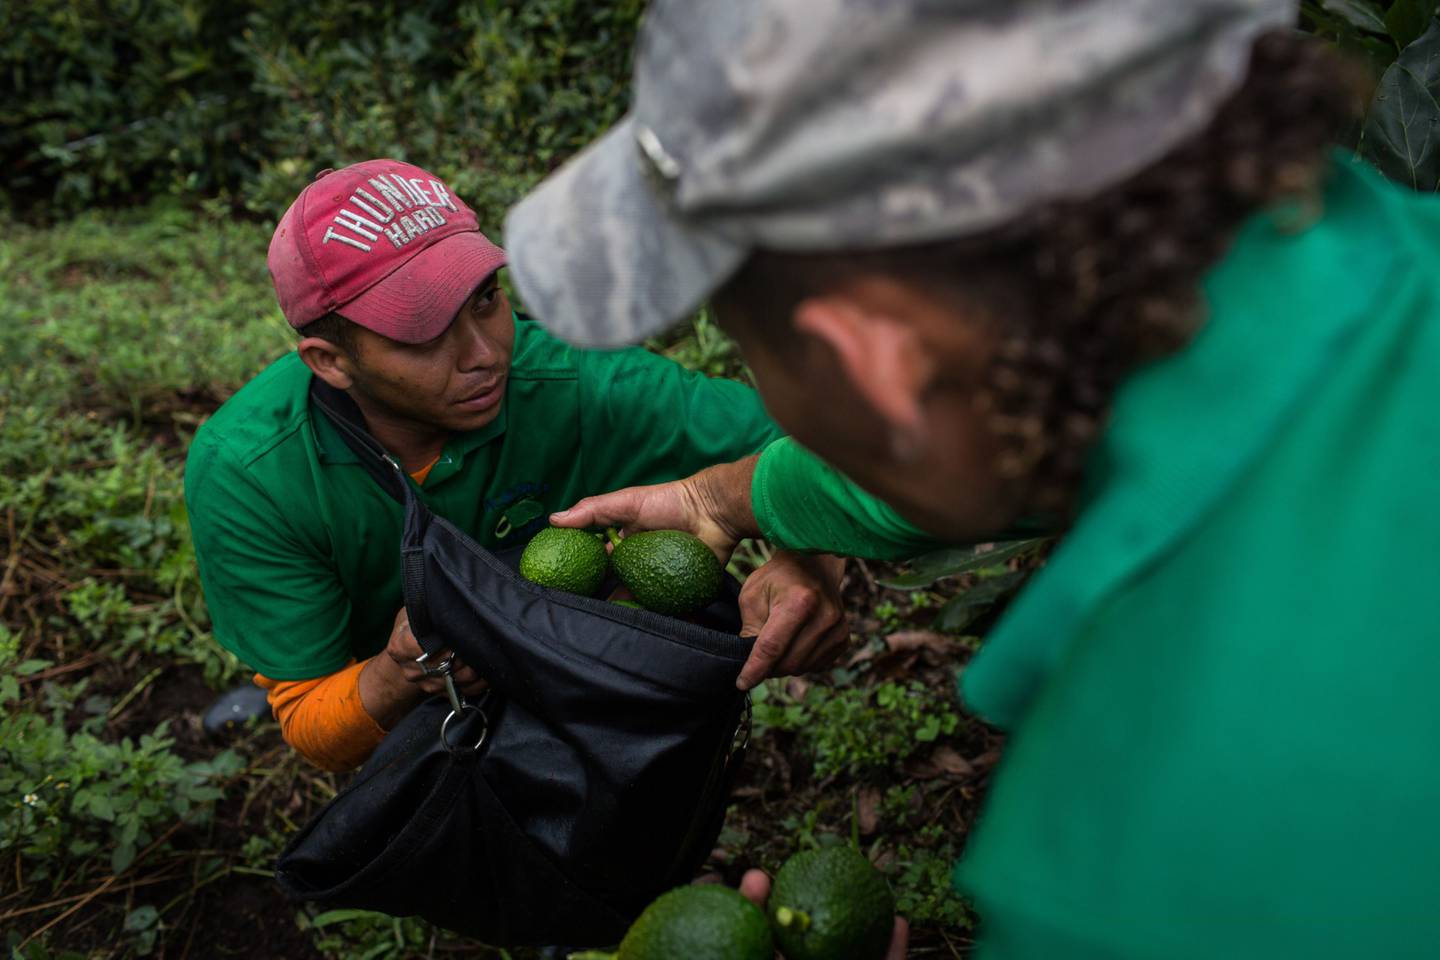 Trabajadores llenan una bolsa con aguacates durante una cosecha en la finca La Regada en Salgar, departamento de Antioquia, Colombia, el lunes 16 de abril de 2018. Fotógrafo: Eduardo Leal/Bloombergdfd